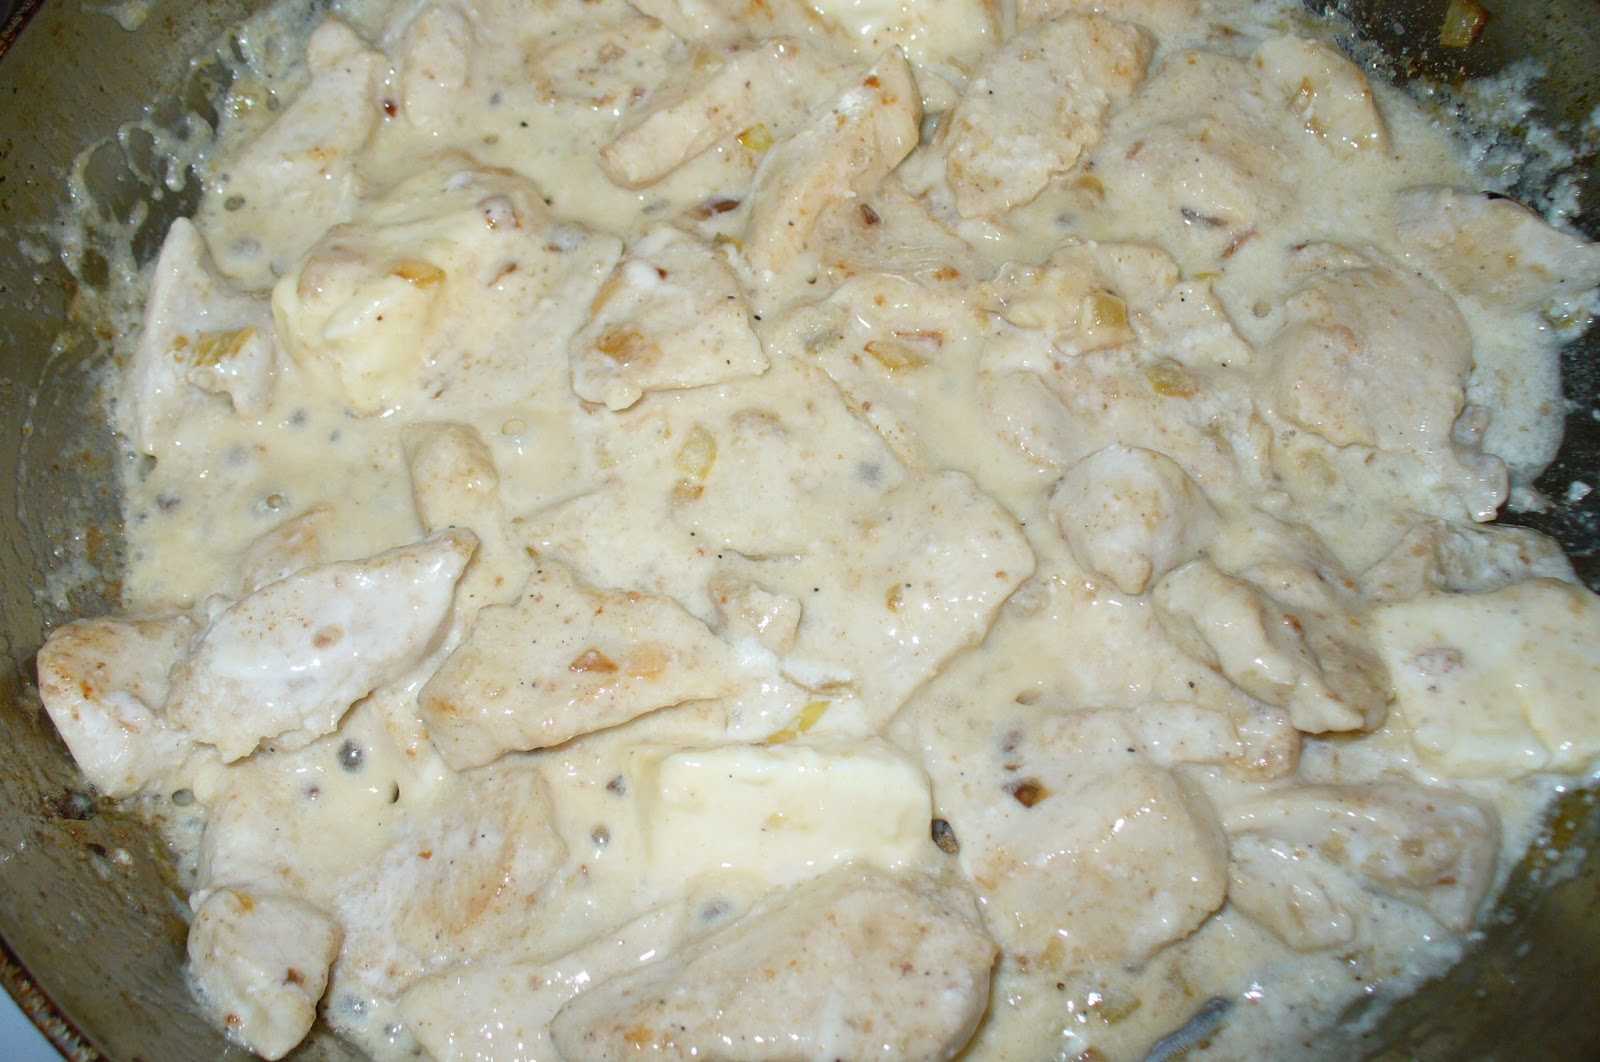 Филе куриное с плавленным сыром на сковороде рецепт с фото